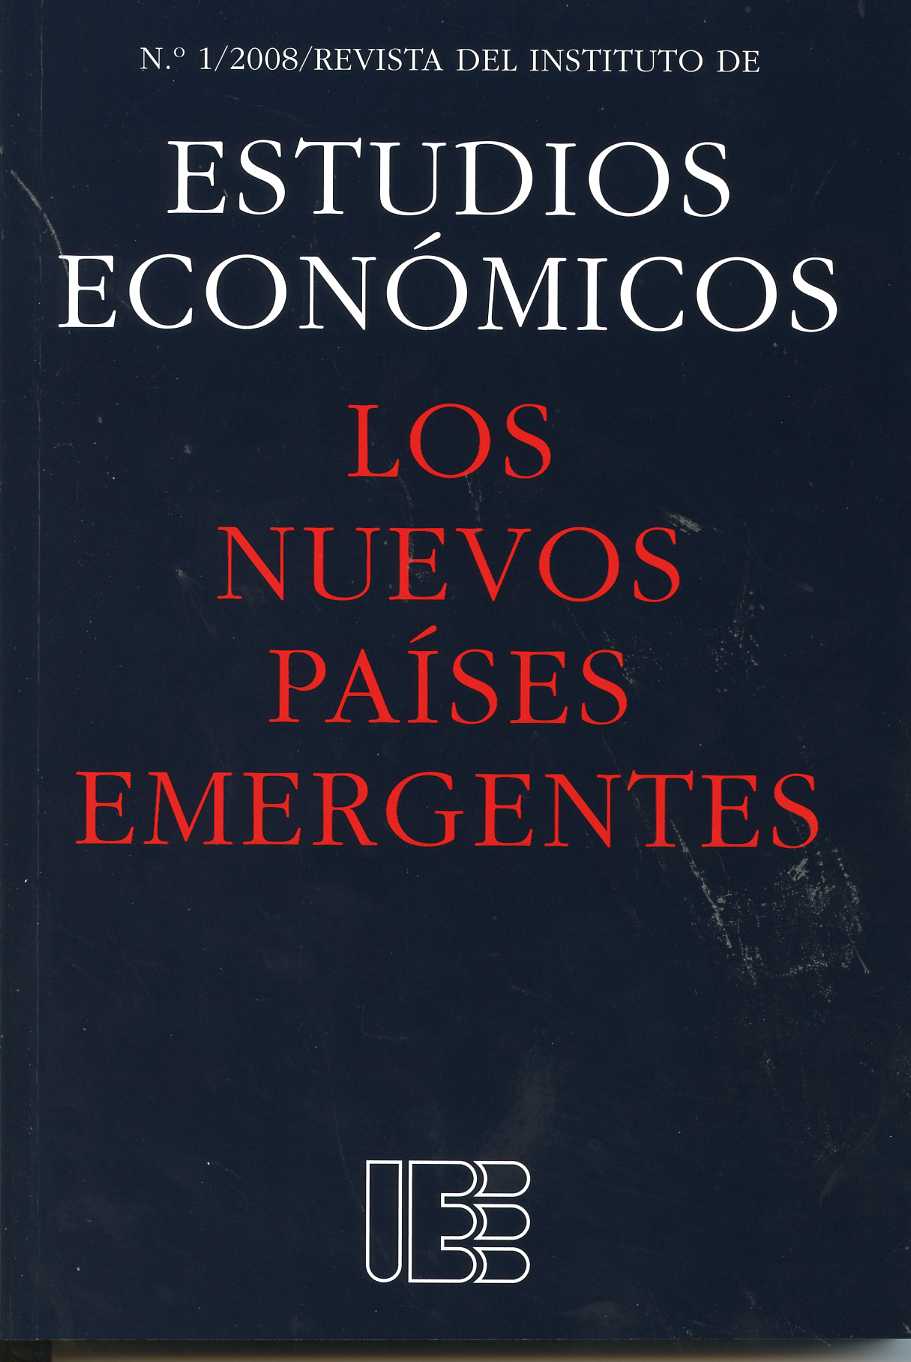 Nuevos Países Emergentes, Los. Revista del Instituto de Estudios Económicos. Nº 1/2008.-0